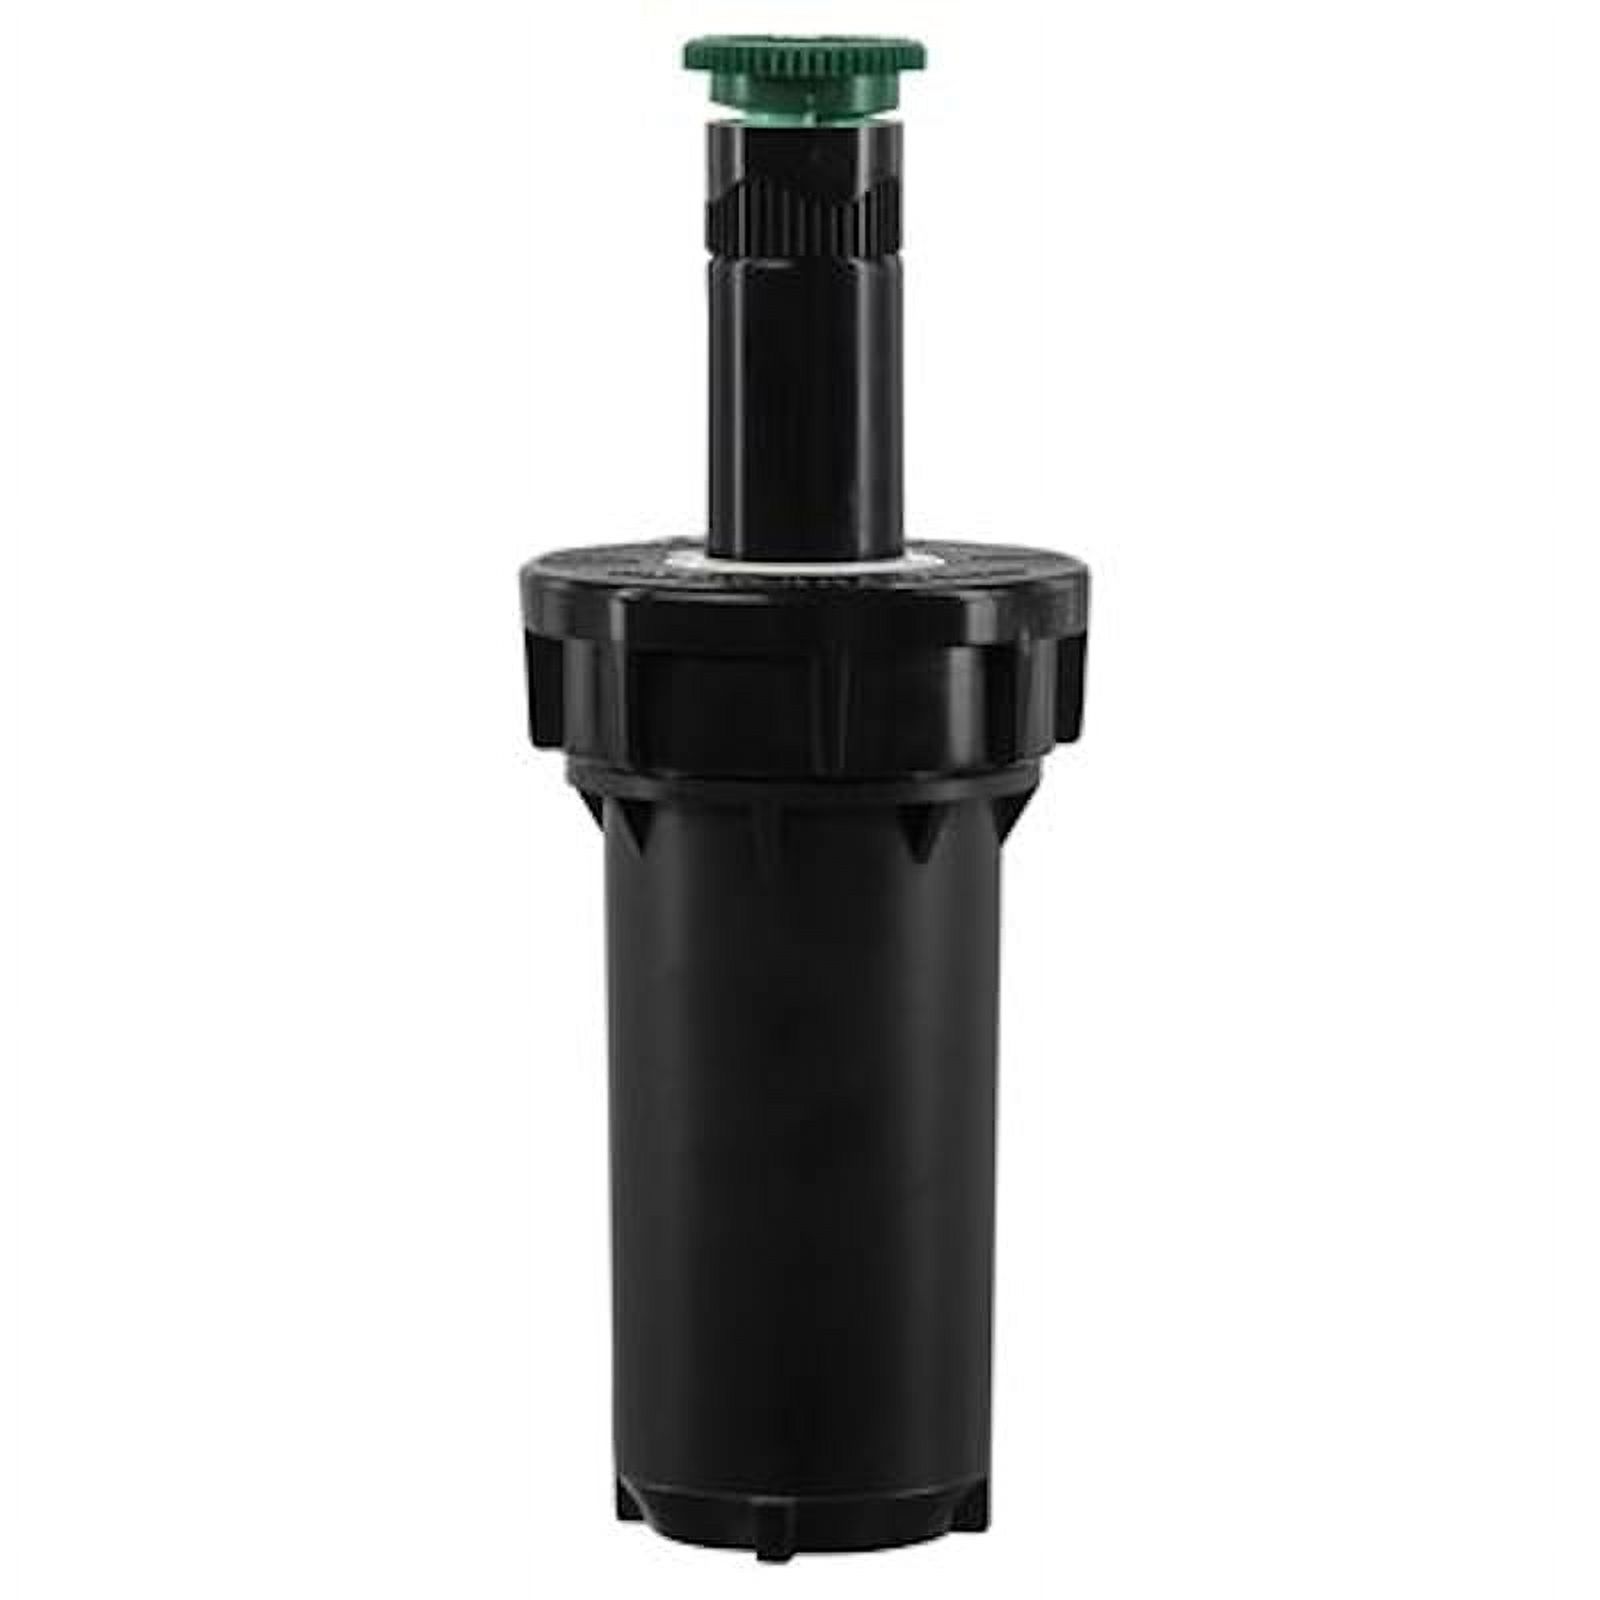 Orbit 80303 Adjustable Pop-Up Sprinkler, 2.25", Black, Plastic - image 1 of 1